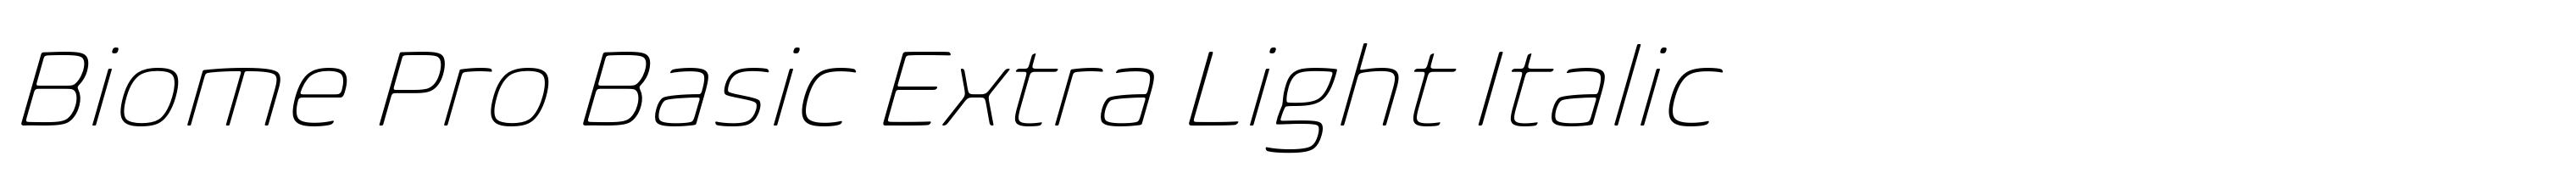 Biome Pro Basic Extra Light Italic